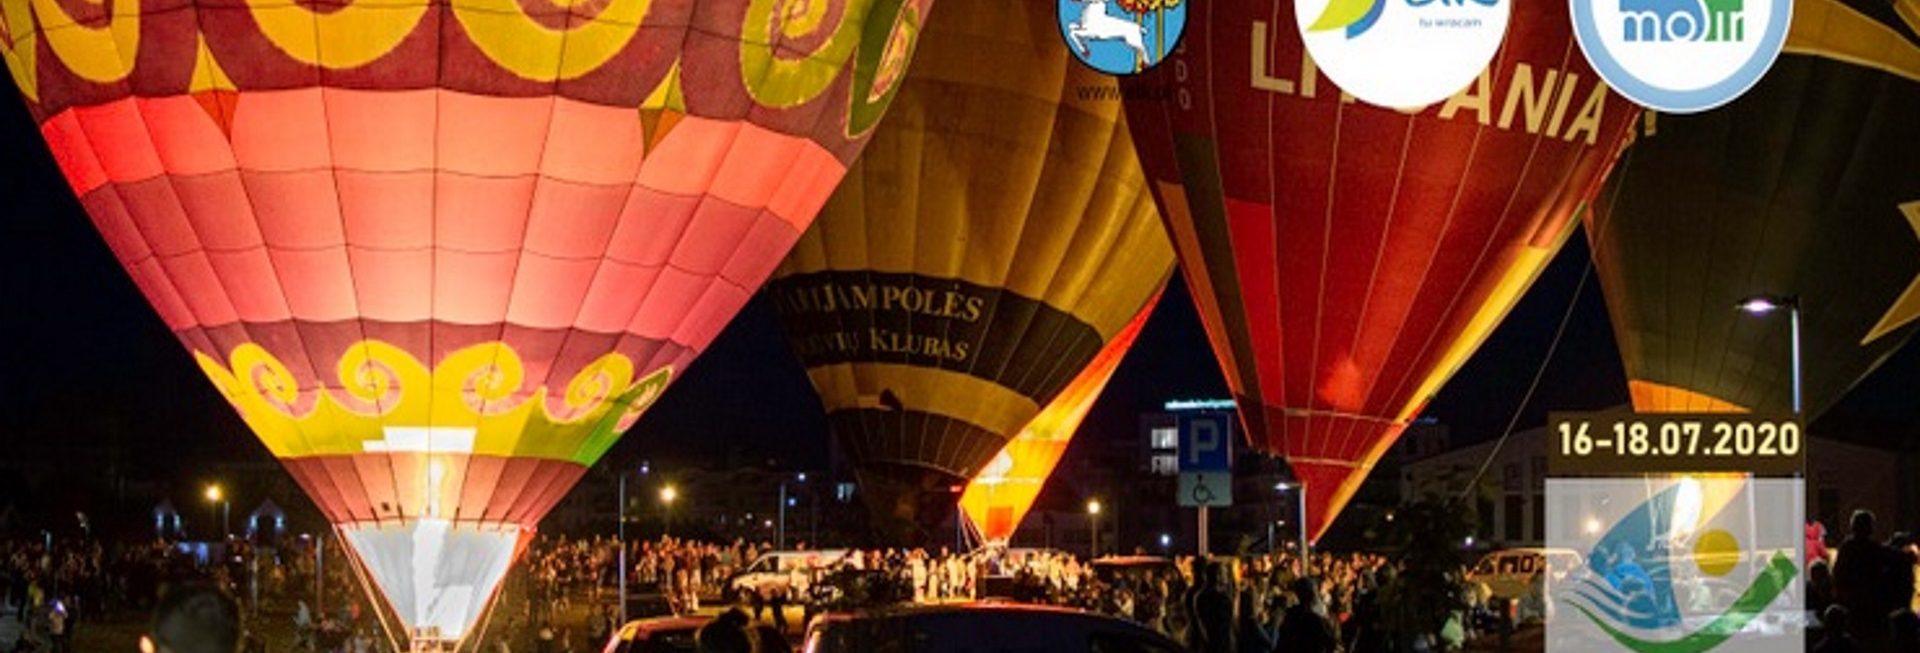 Zdjęcie przedstawia balony przygotowane do wylotupodczas imprezy nocnej w Ełku. 